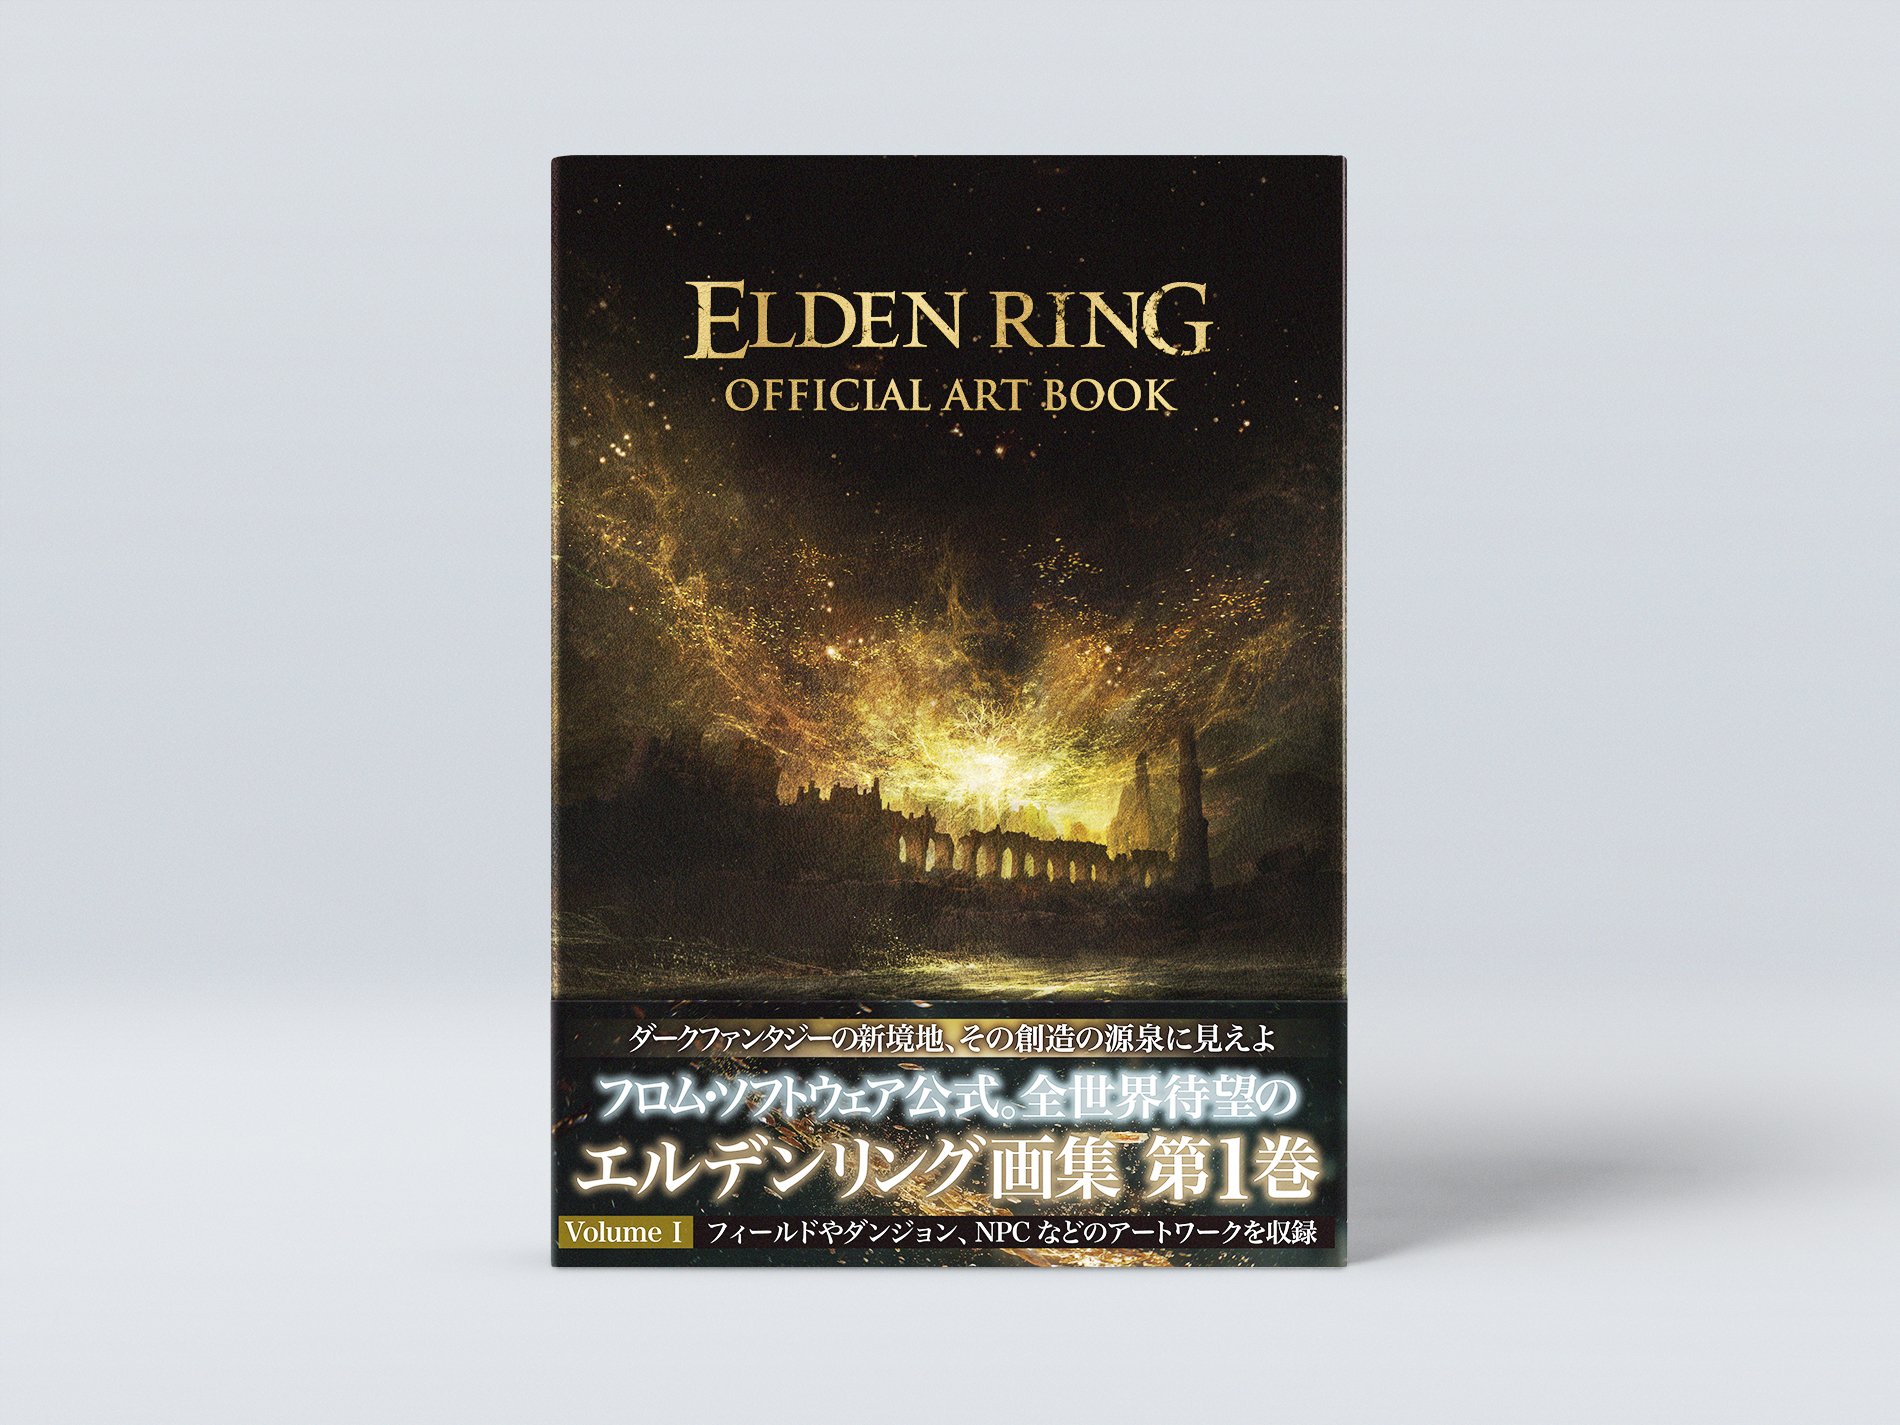 《艾爾登法環》官方藝術設定集11月30日發售